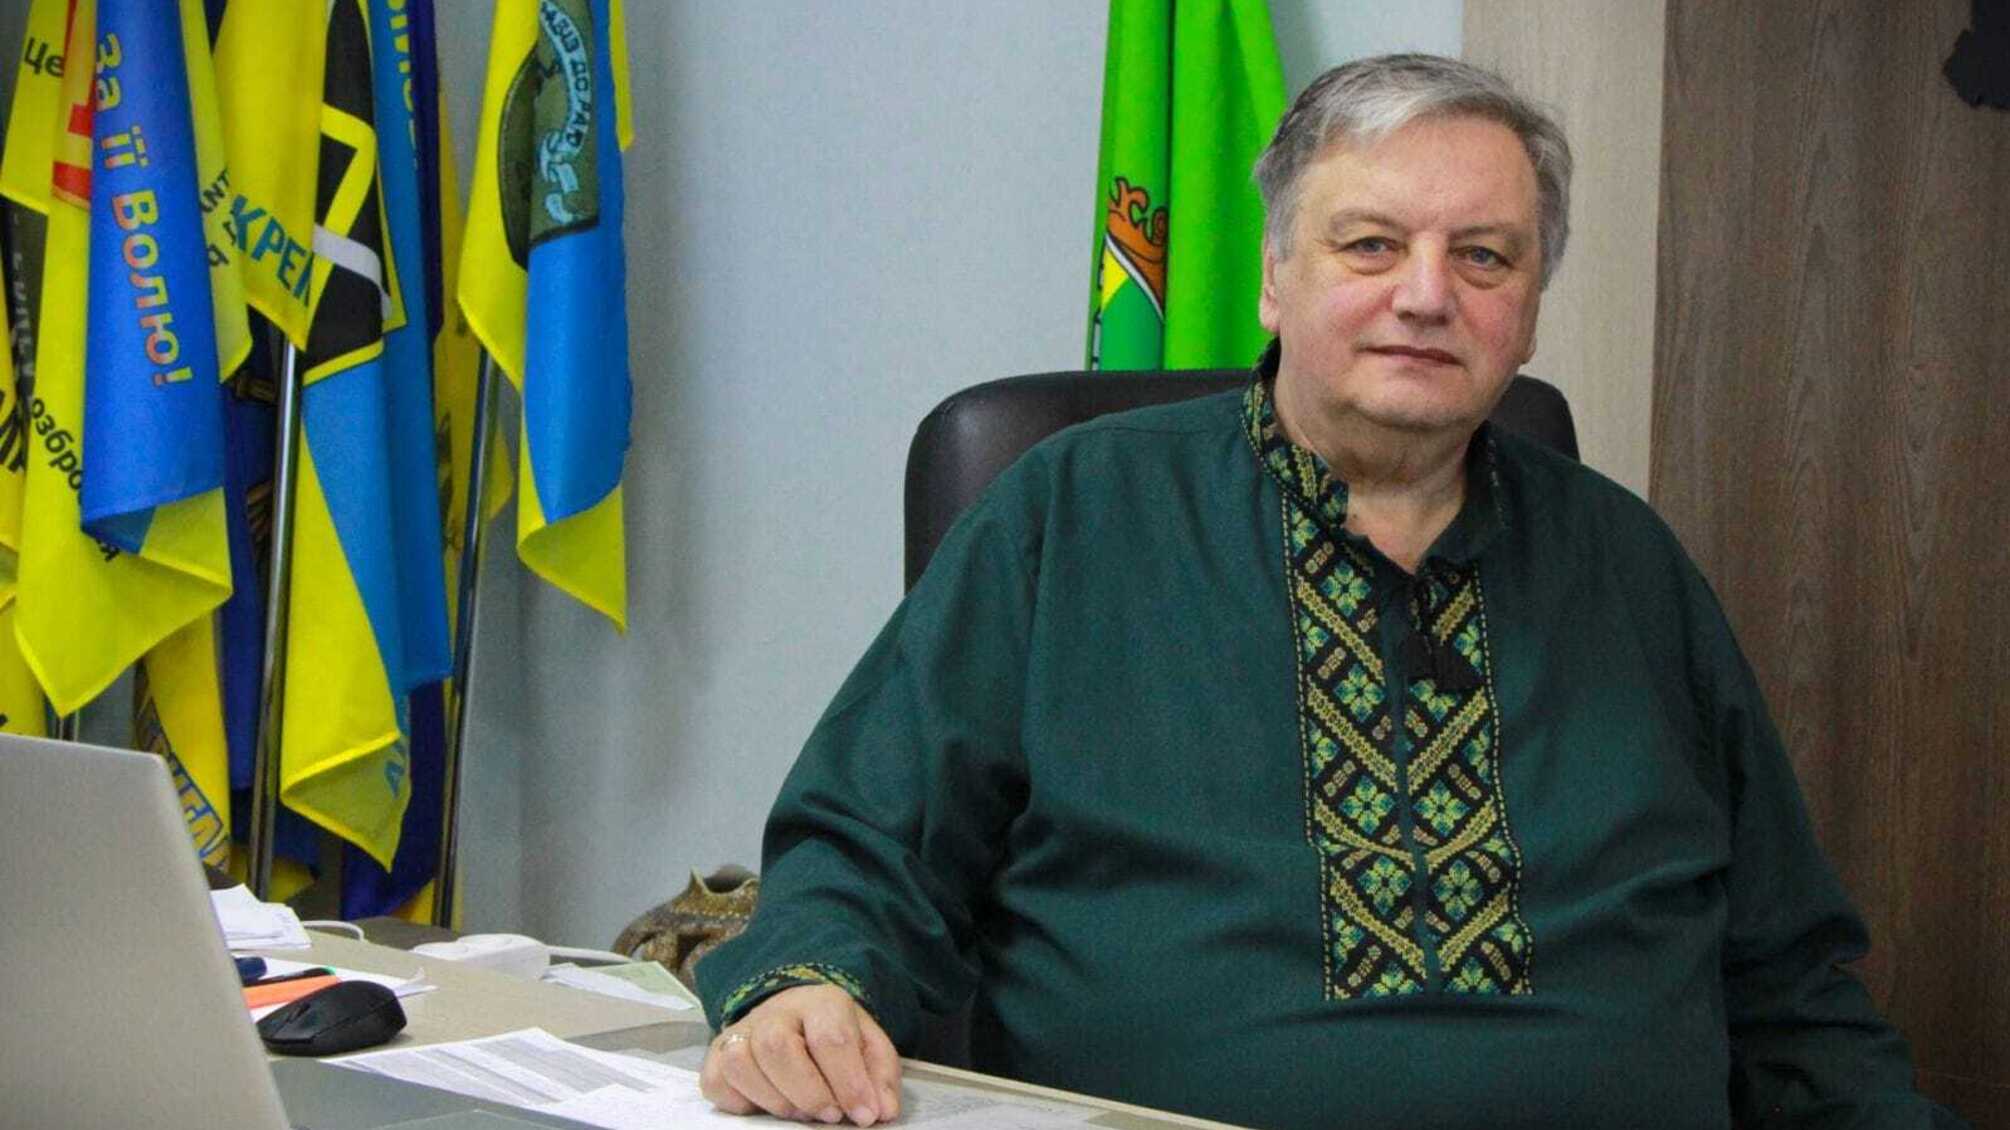 Мэр Нетишина провалил вопрос с укрытиями, но поспешил попиариться